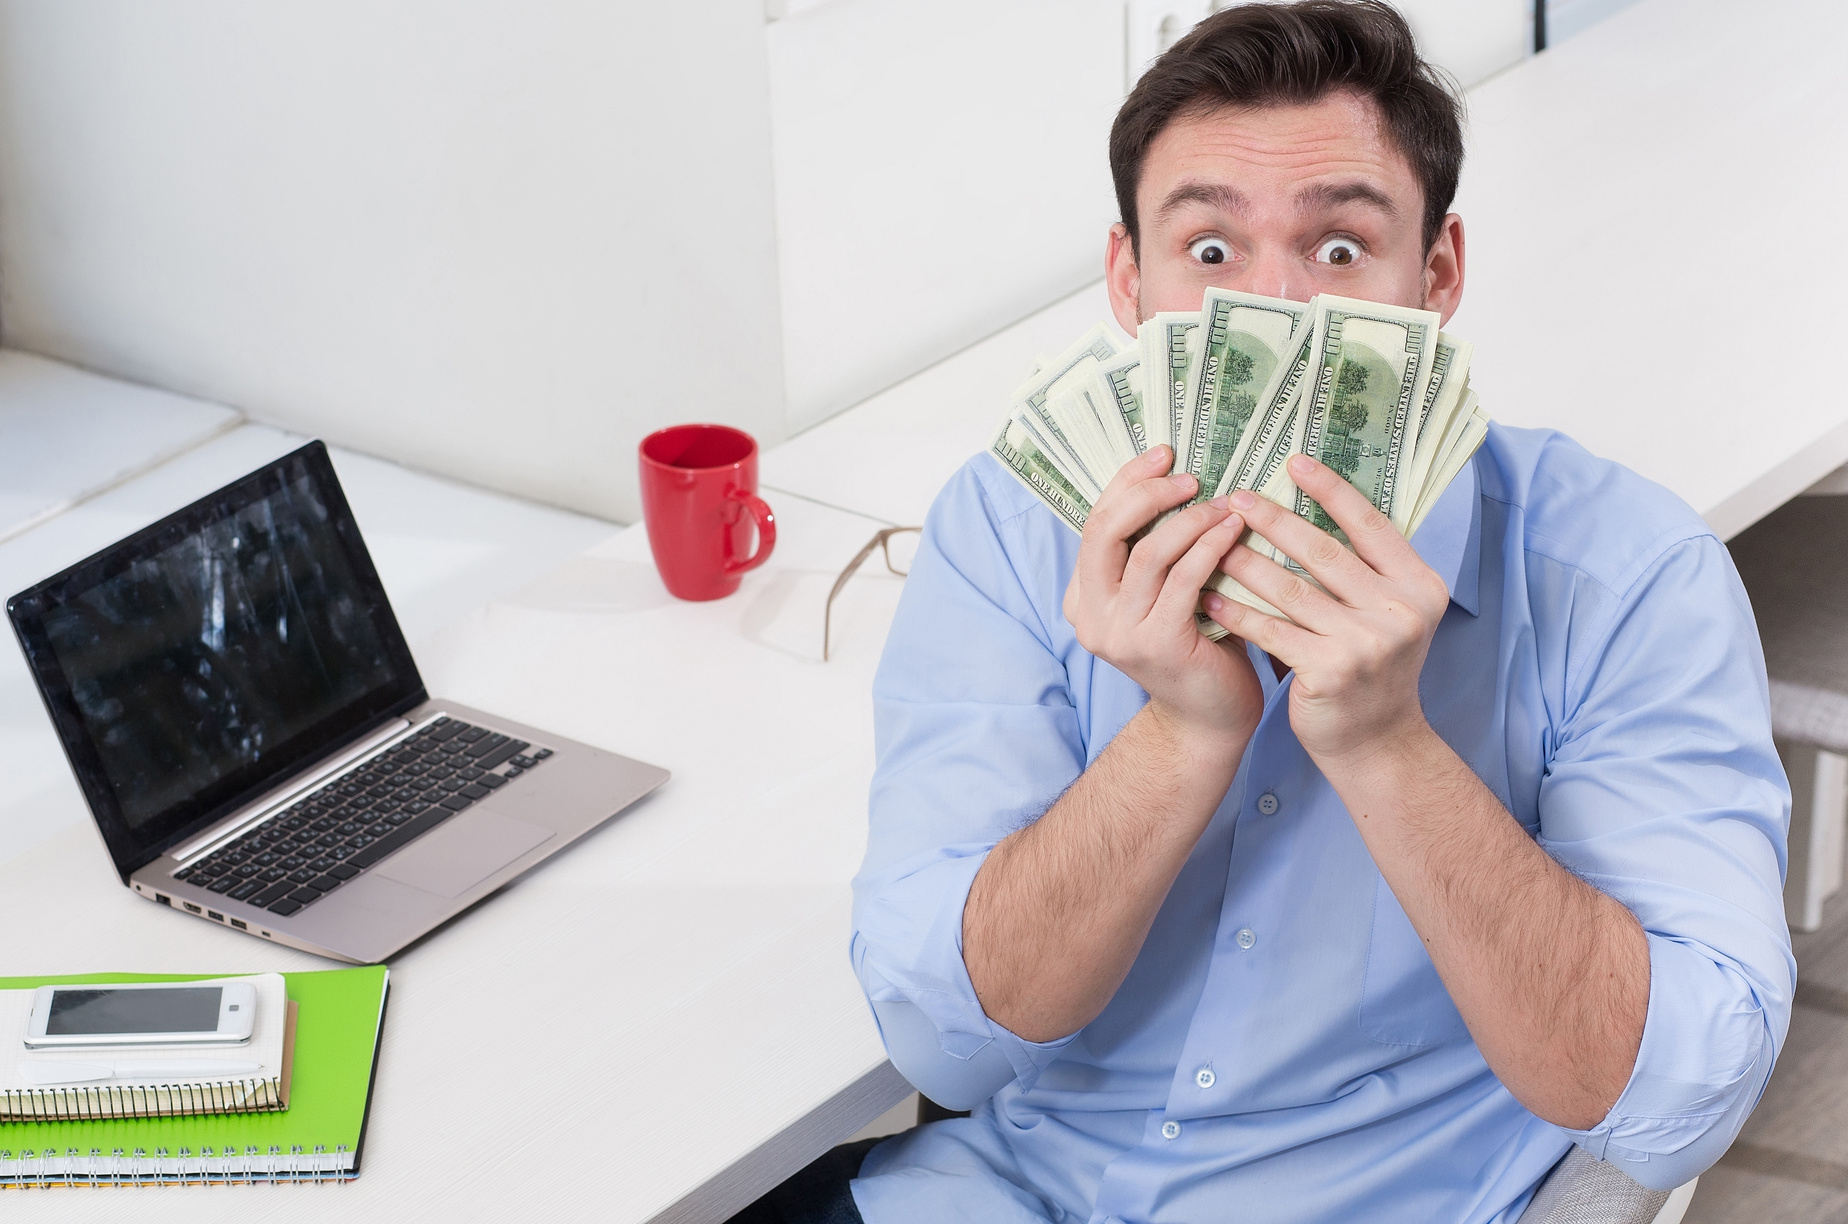 10 Legit ways to make money online